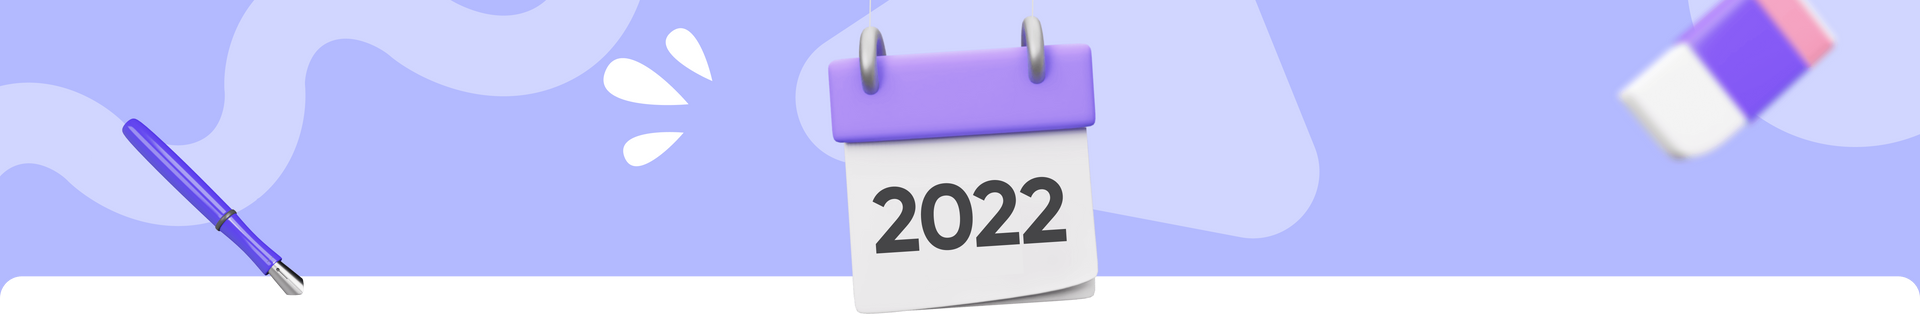 Steuererklärung 2022: Die Fristen zur Abgabe und alle weiteren Infos!